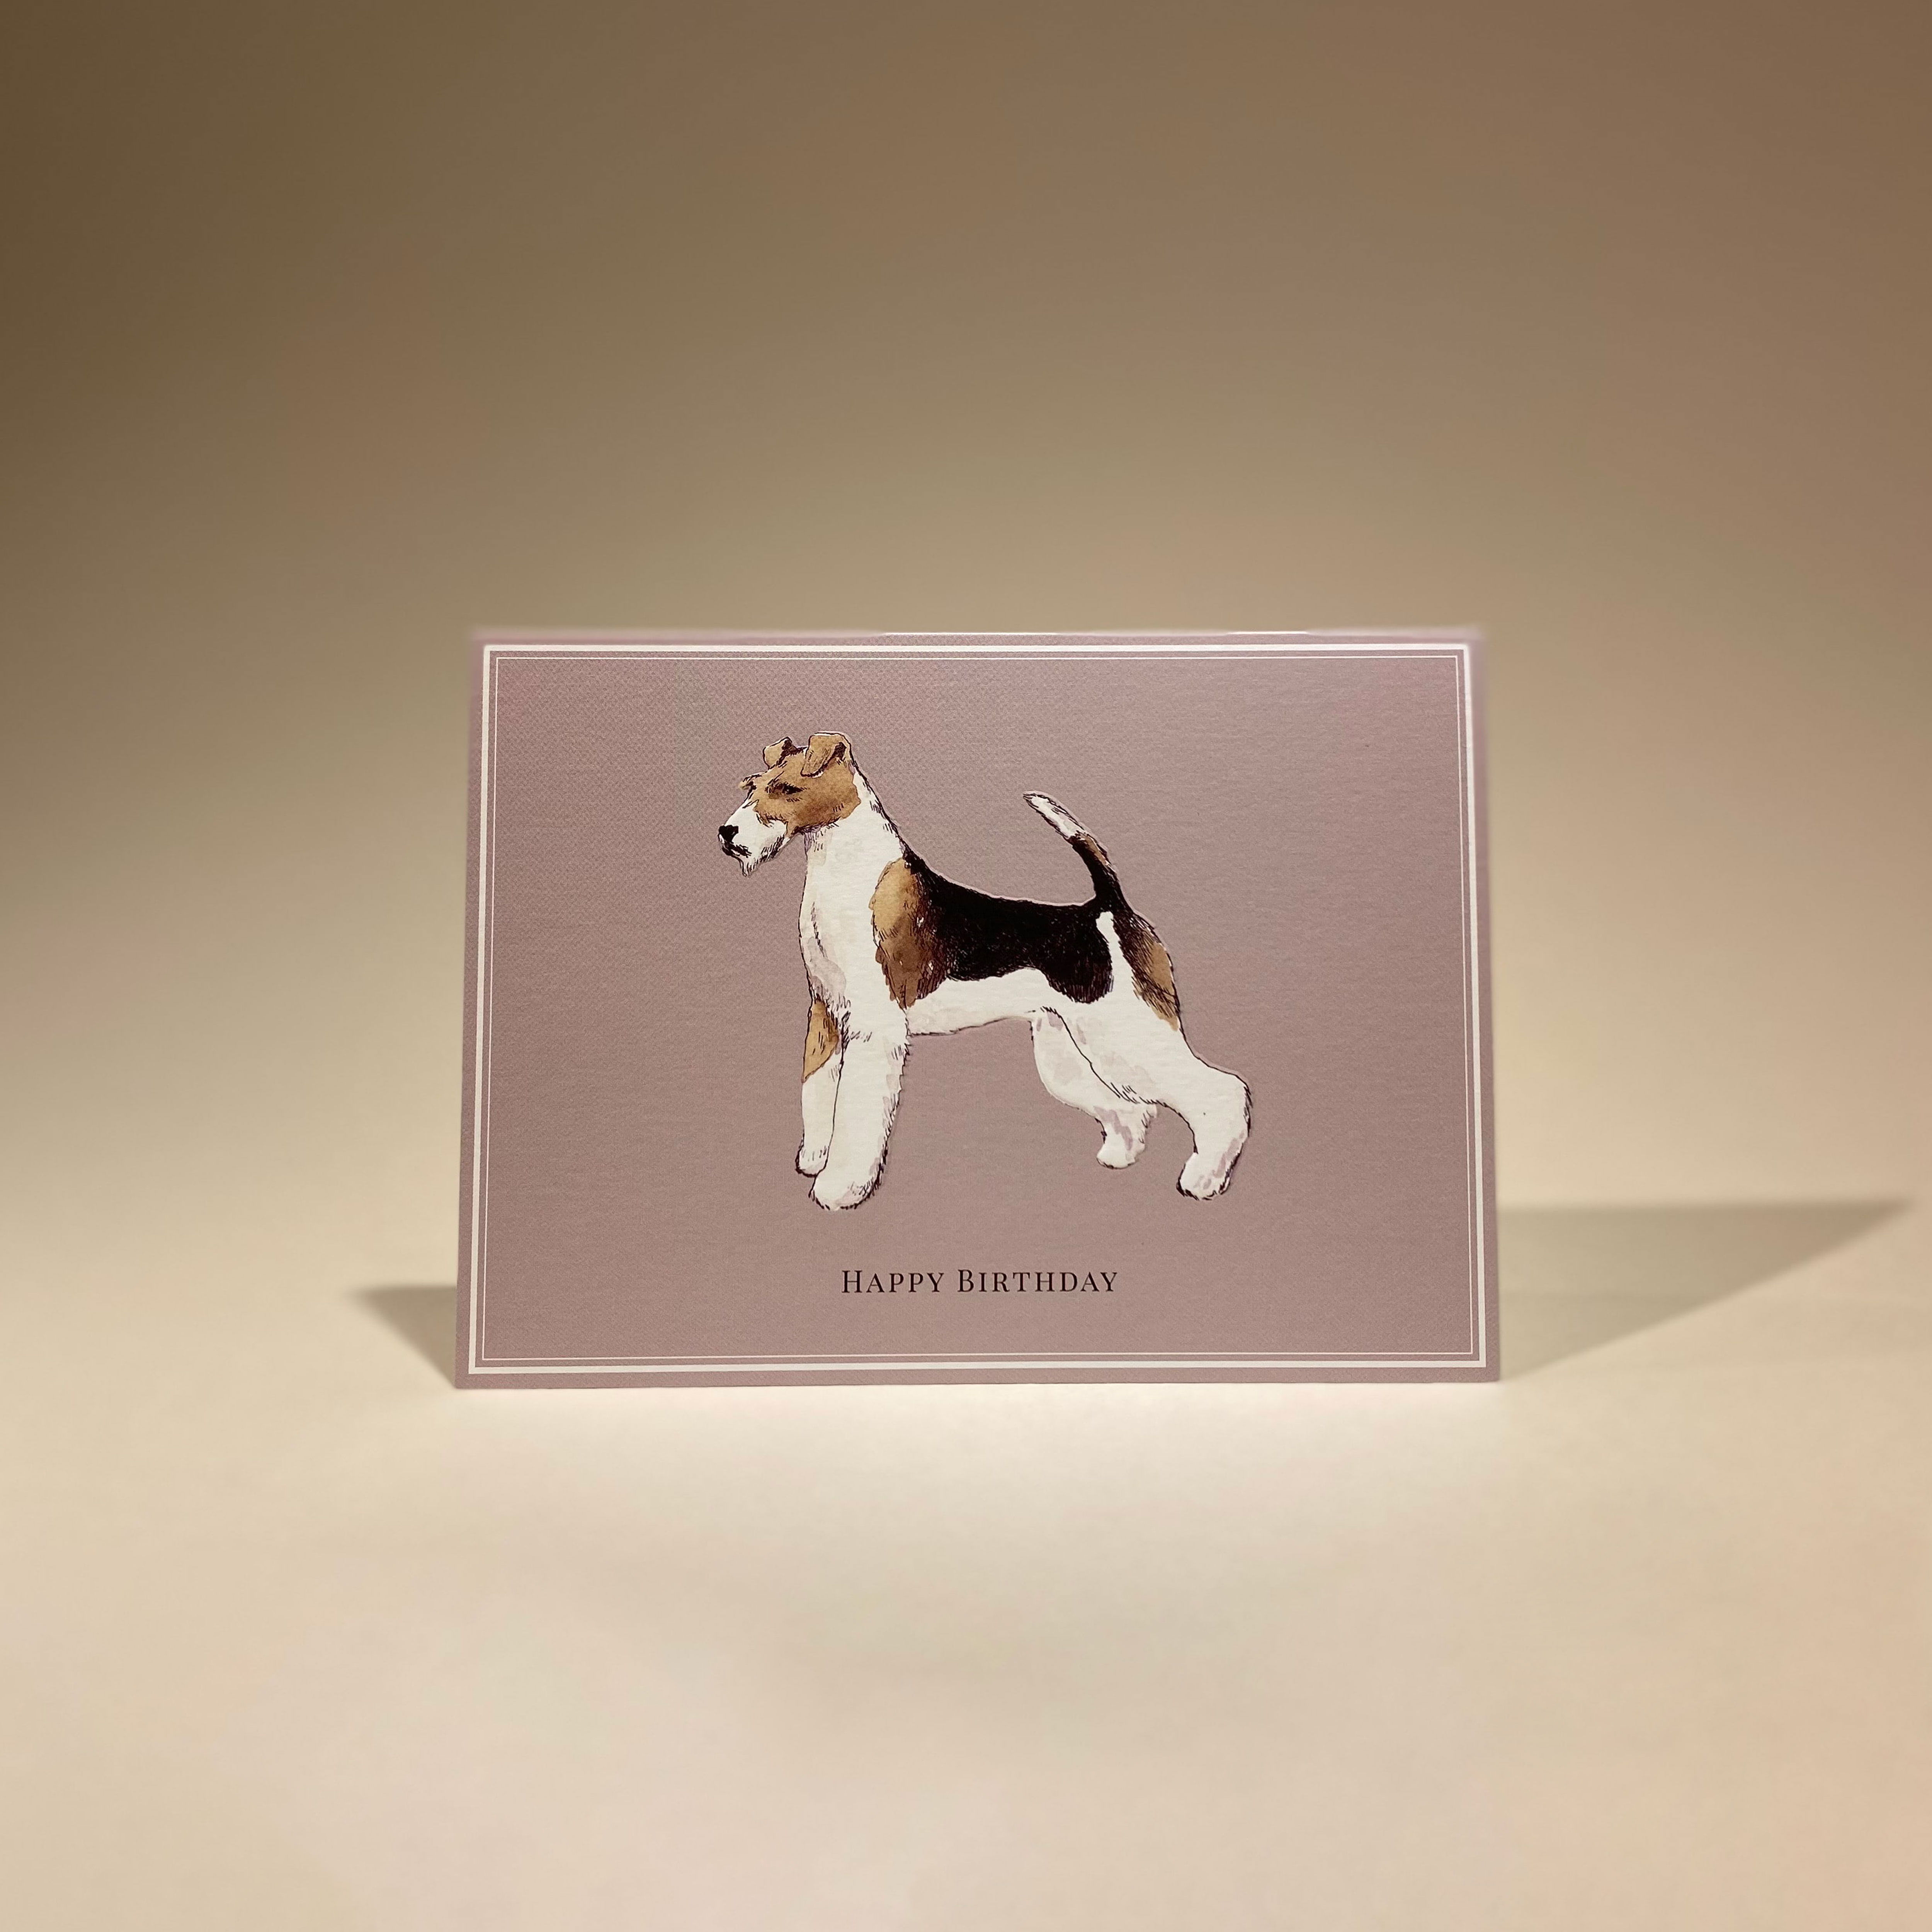 와이어 폭스 테리어 강아지 생일축하 카드